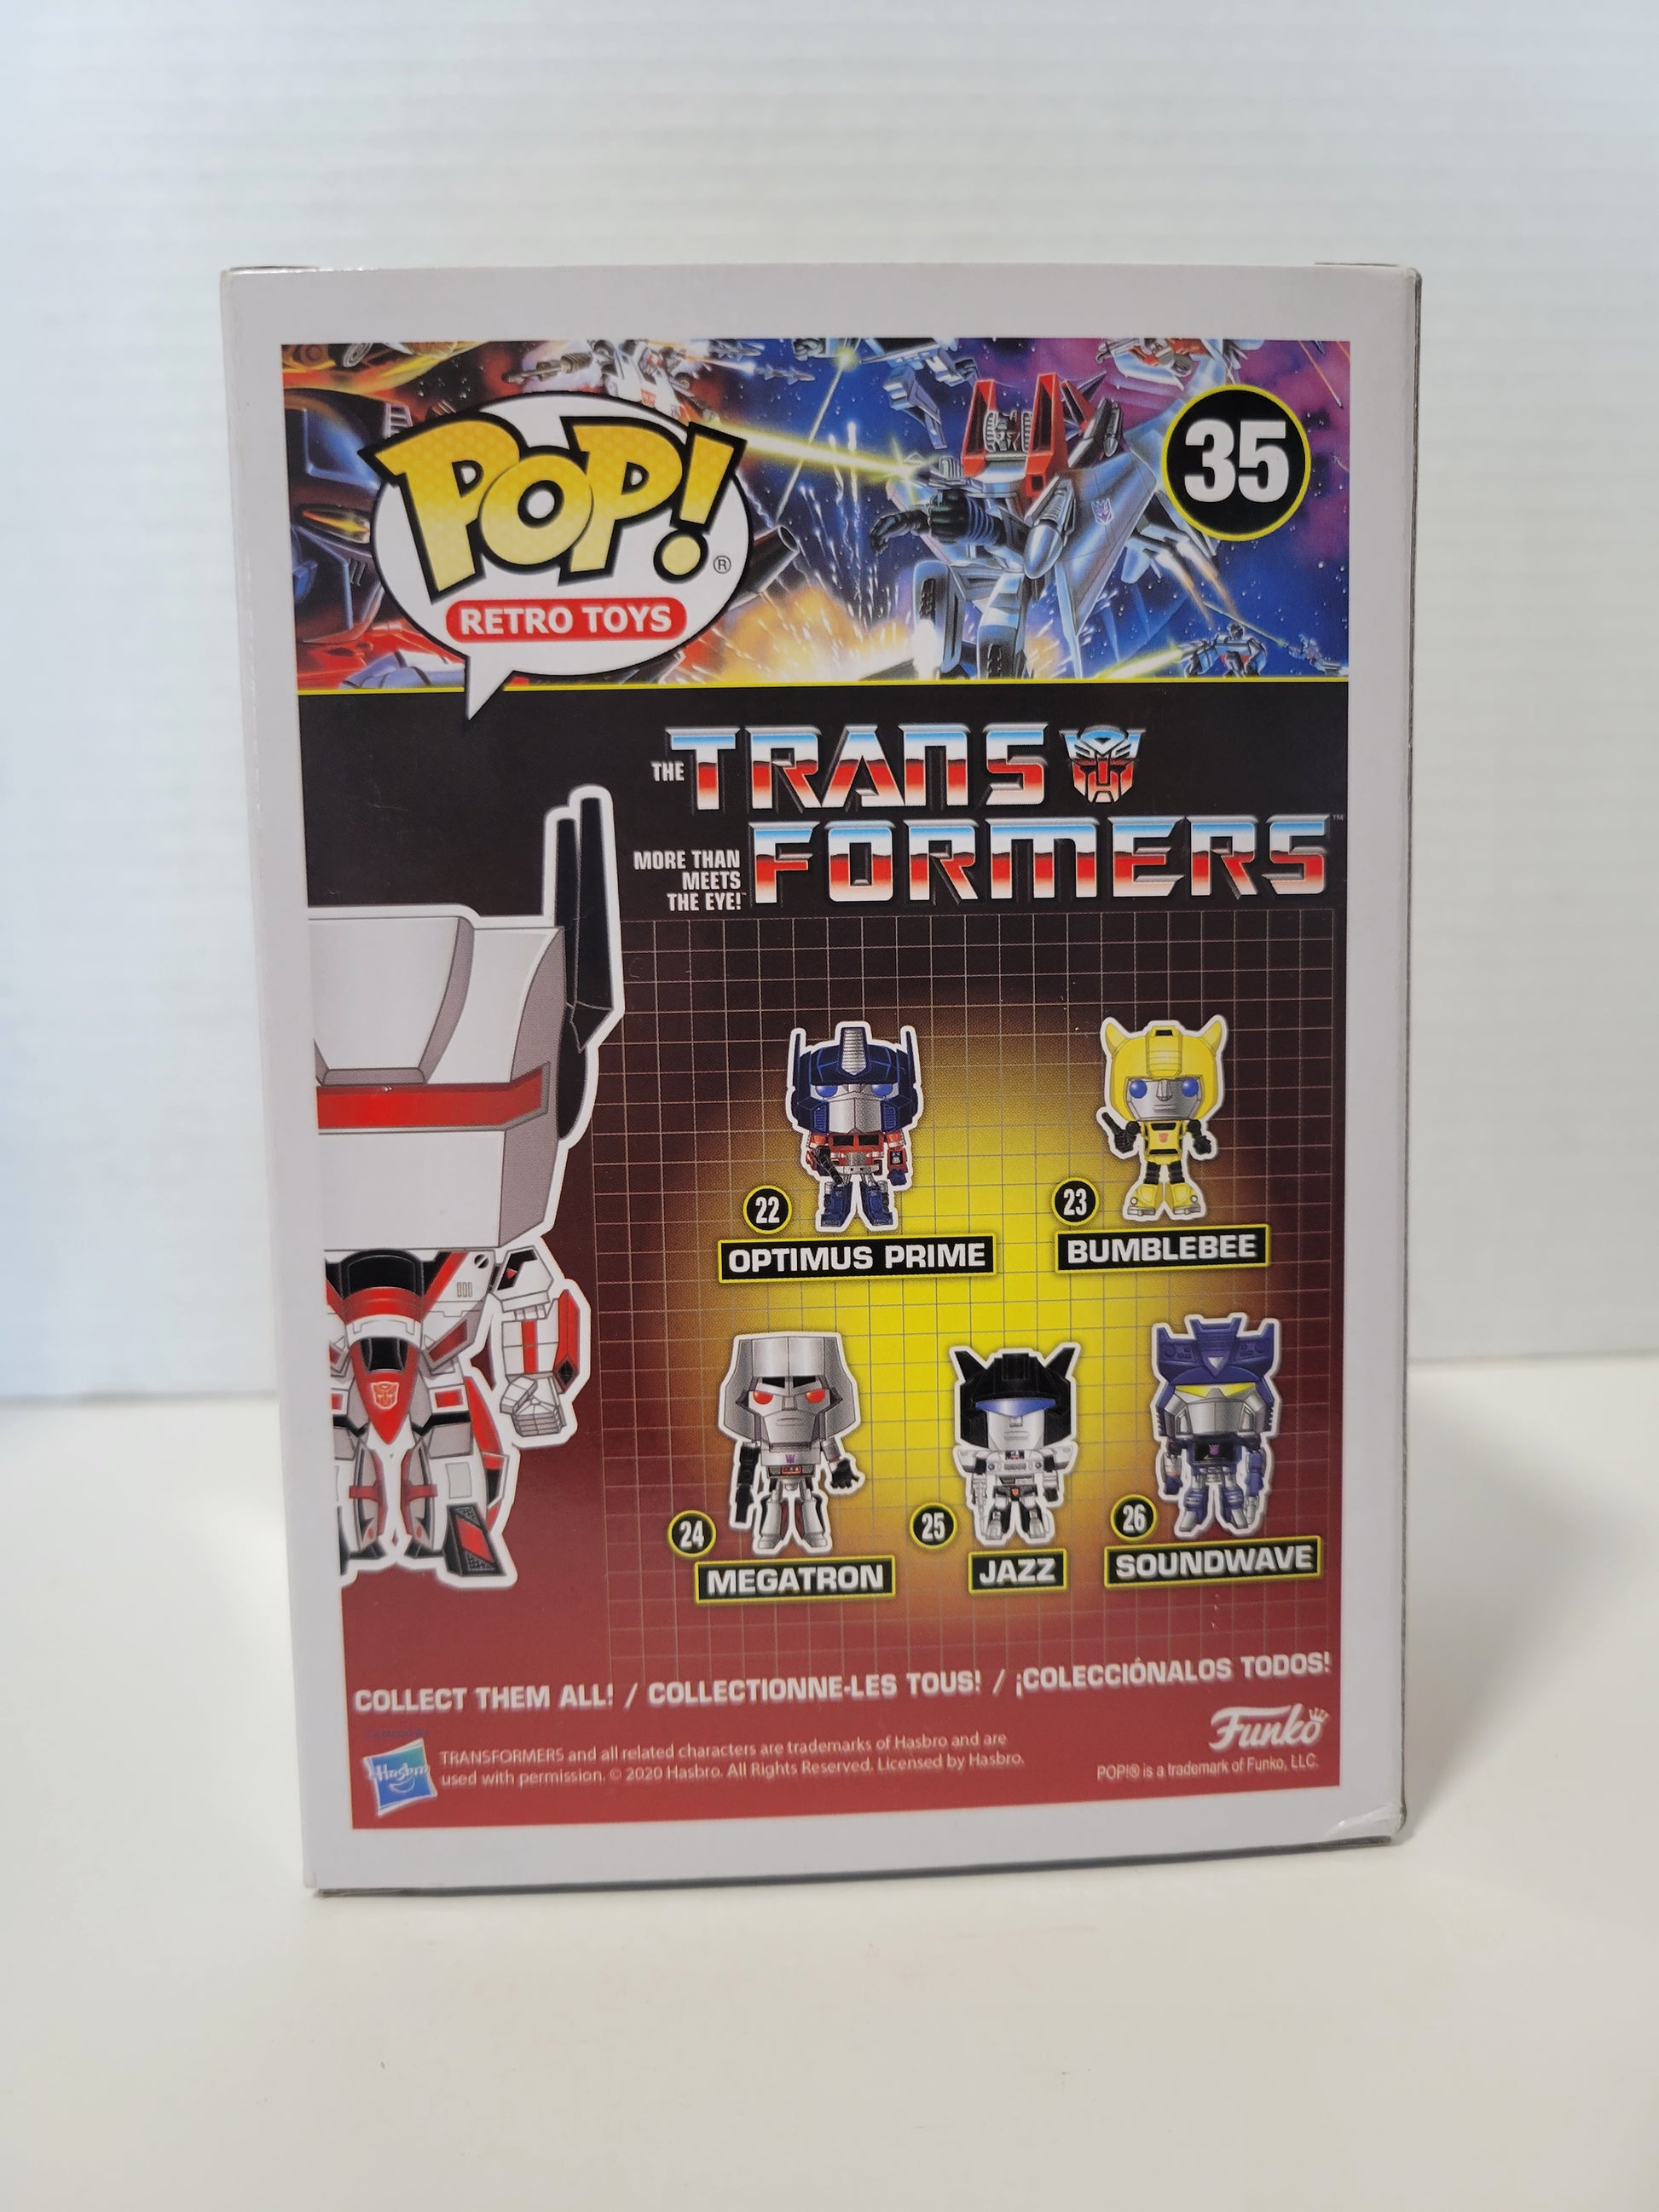 Funko Pop! Filmes Transformers Jetfire 35 Exclusivo Original - Moça do Pop  - Funko Pop é aqui!